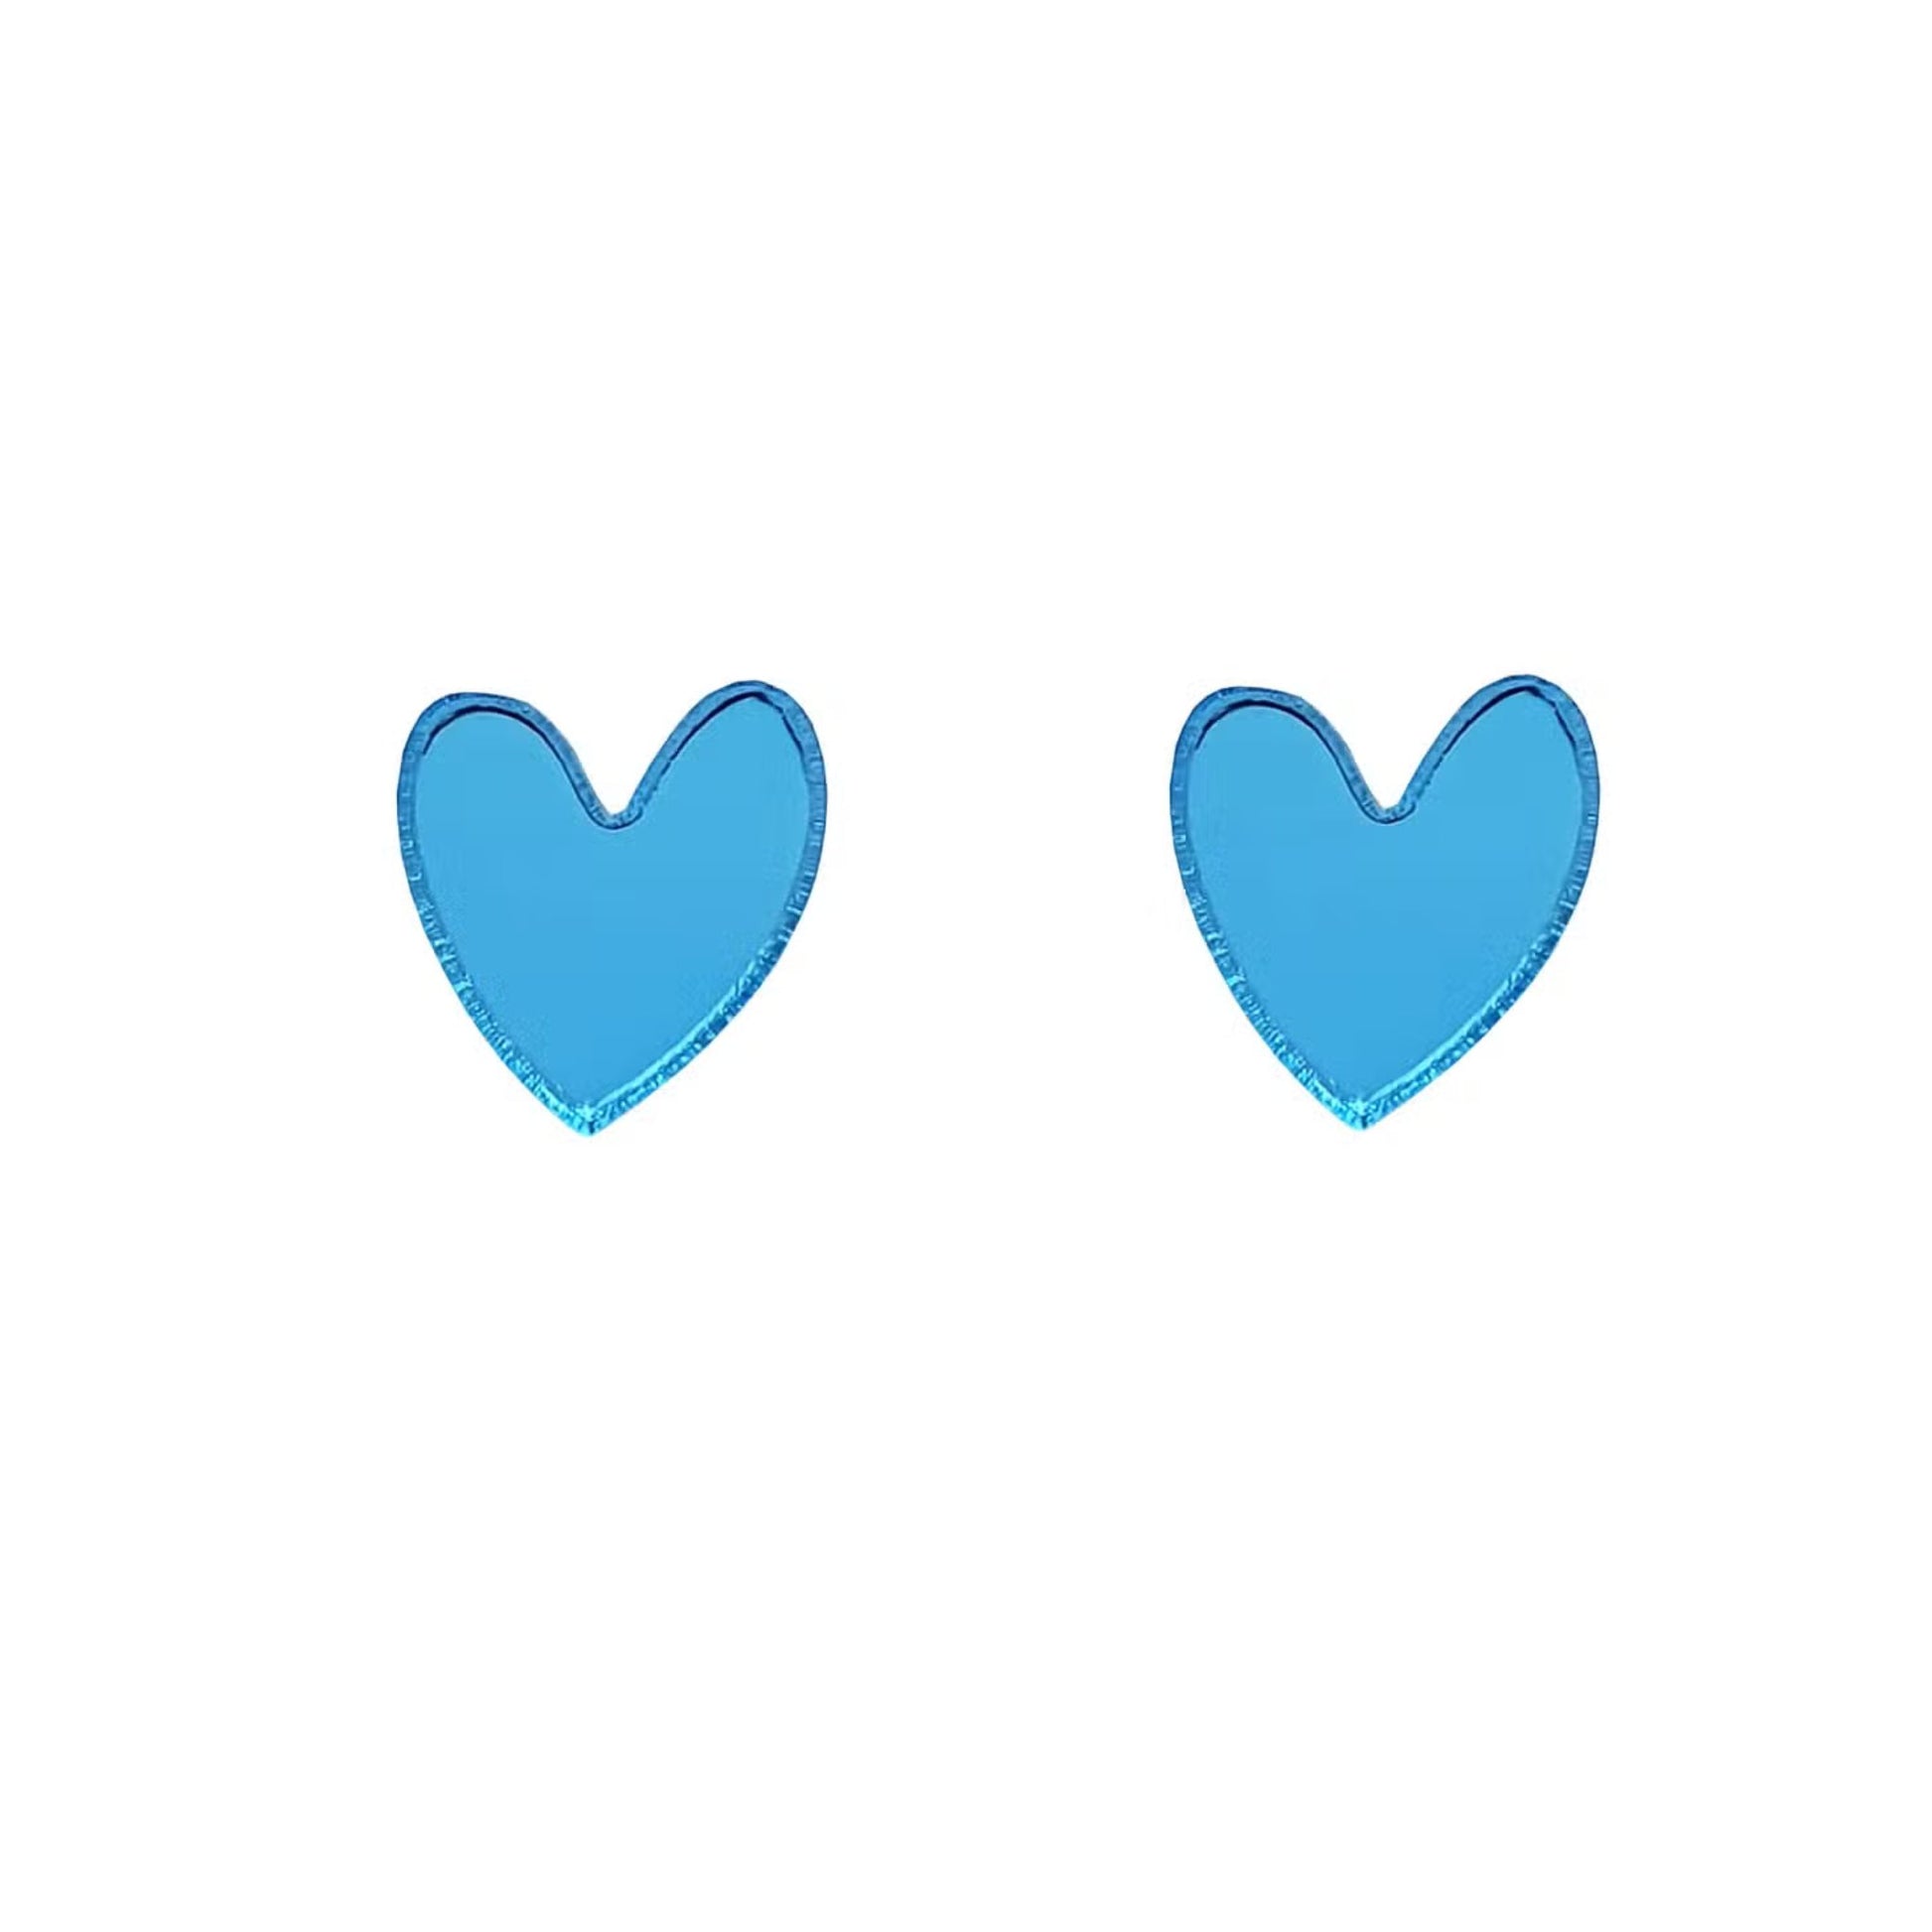 Heart Stud Earrings - Light Blue Mirror - The Little Jewellery Company